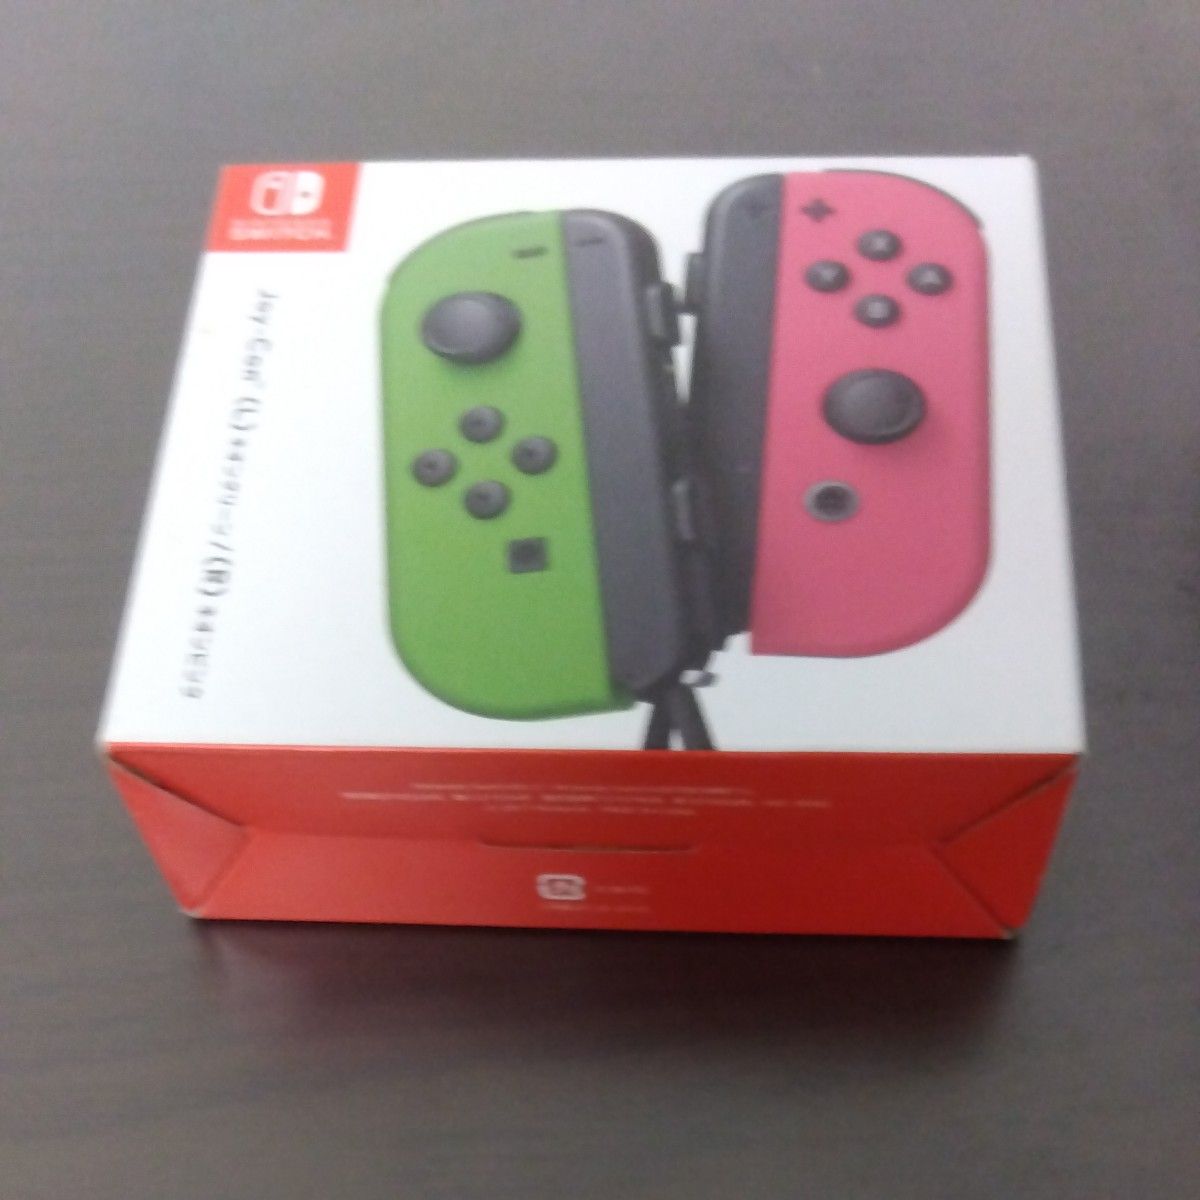 ネオンピンク×ネオングリーン    ネオンイエロー×ブルー空き箱のみ 開封済み ジョイコン 任天堂 Nintendo Switch